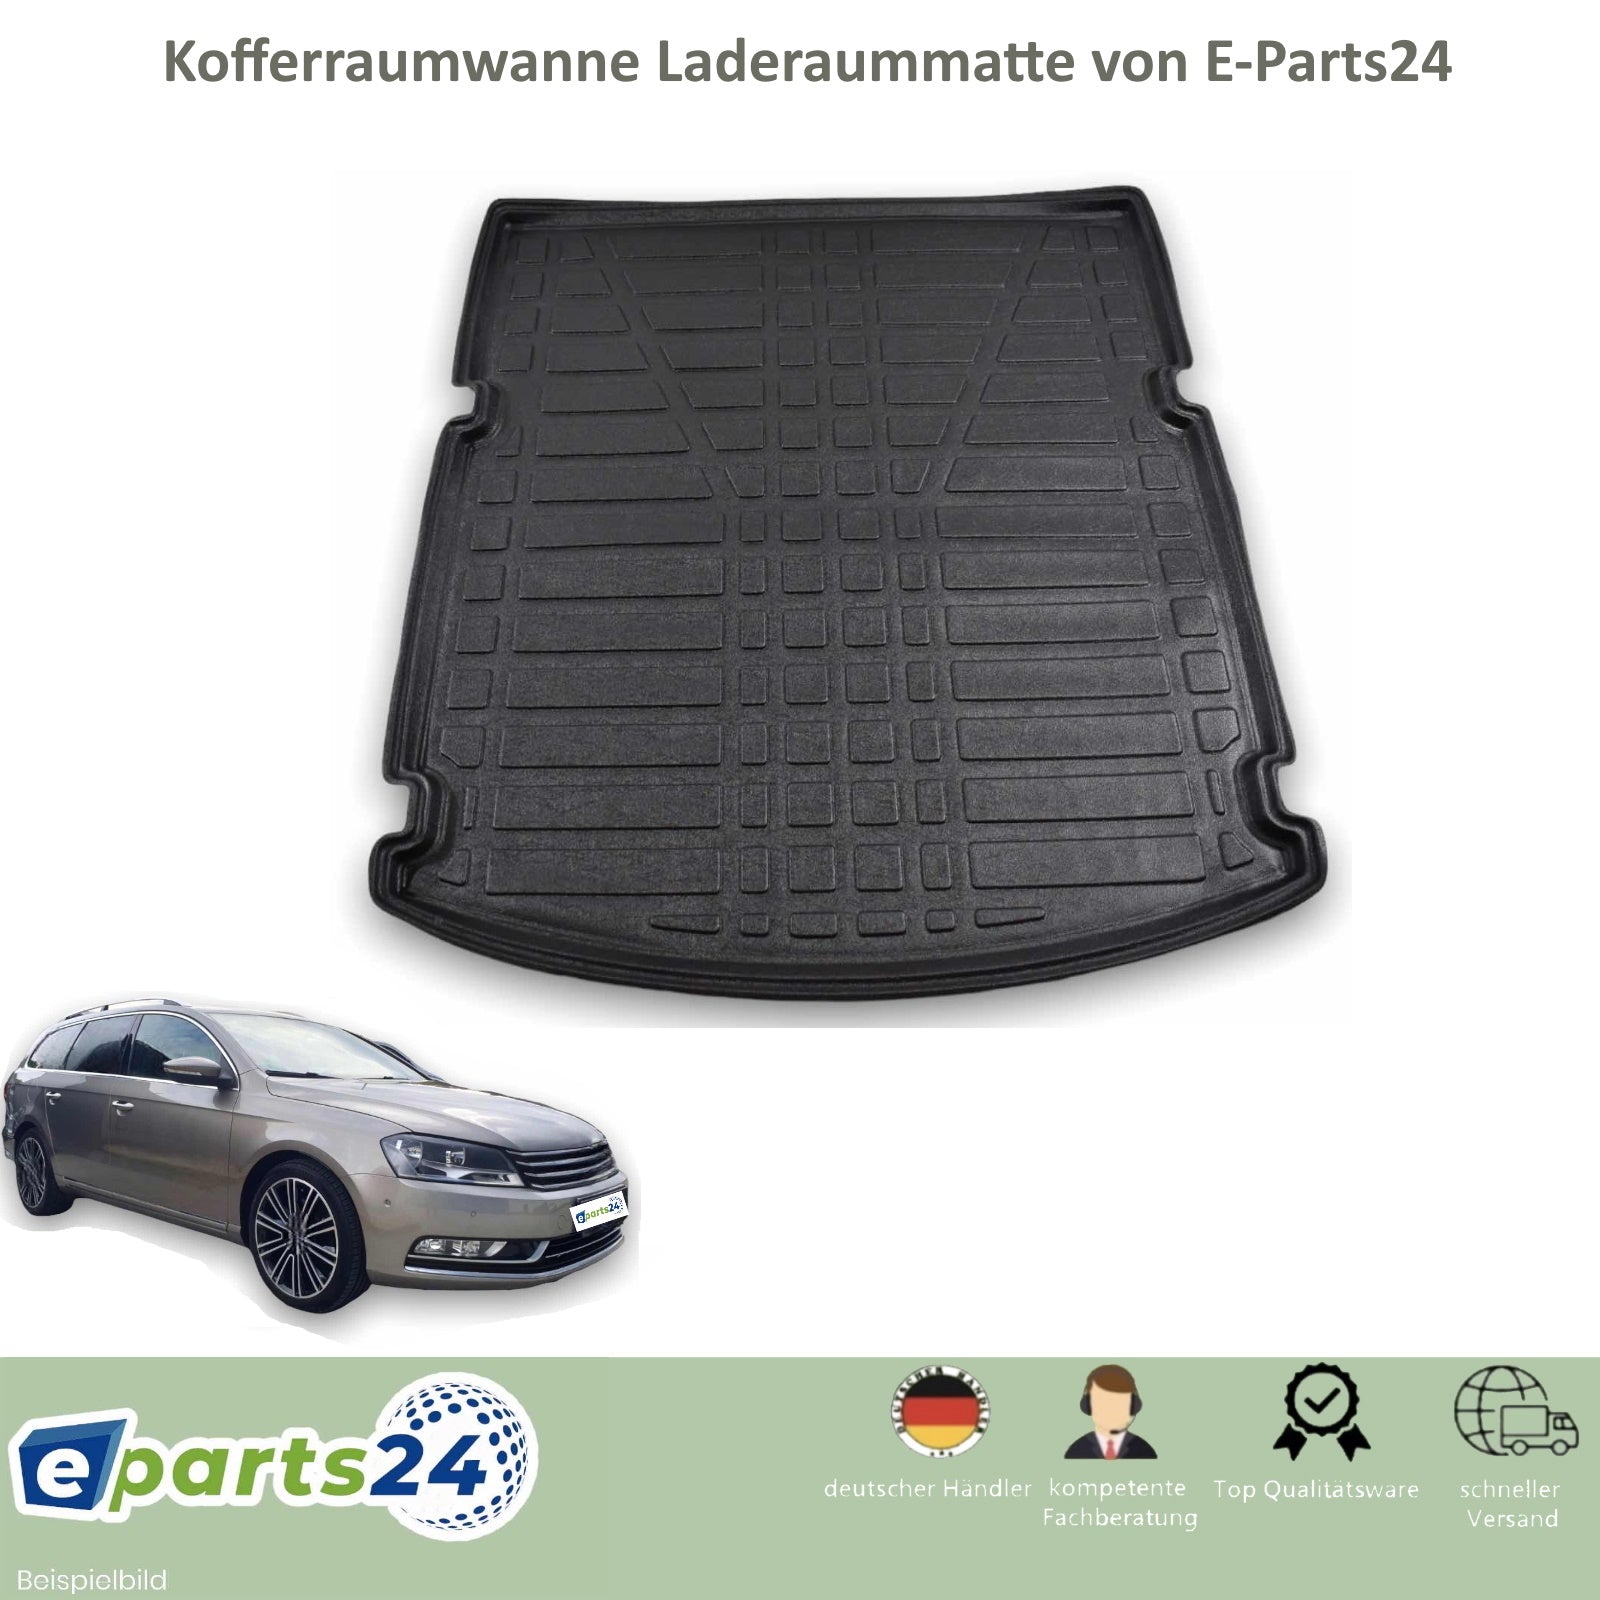 Kofferraumwanne Kofferraummatte für VW Passat B7 3C Variant Kombi 2010 –  E-Parts24